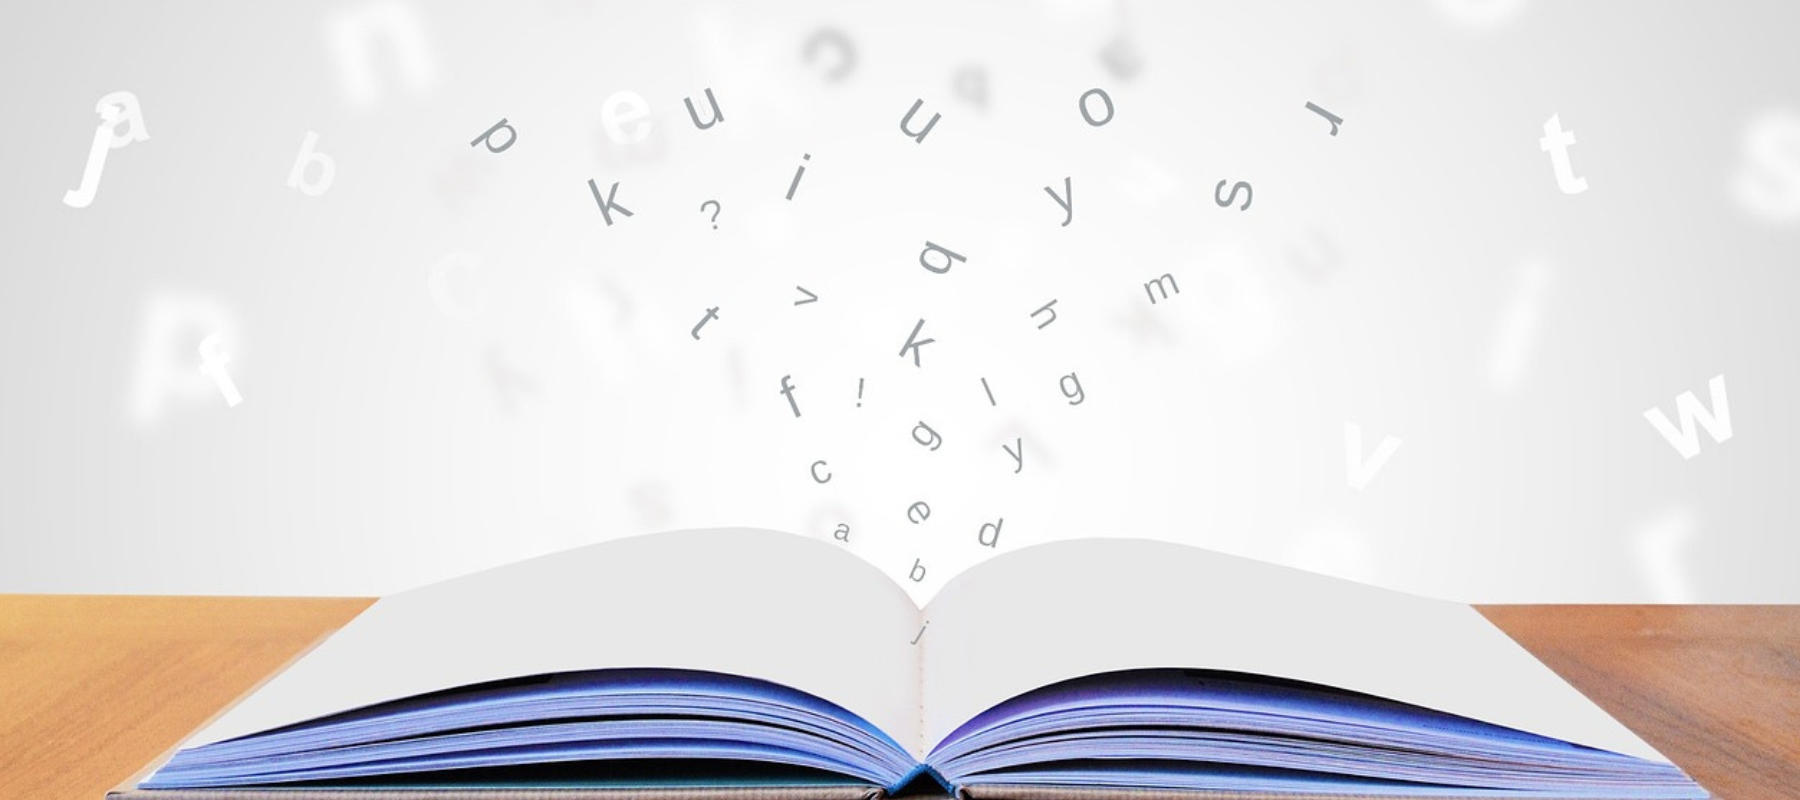 QuietFrames en livsinvestering! Bilden visar en öppen bok med bokstäver som flödar ut